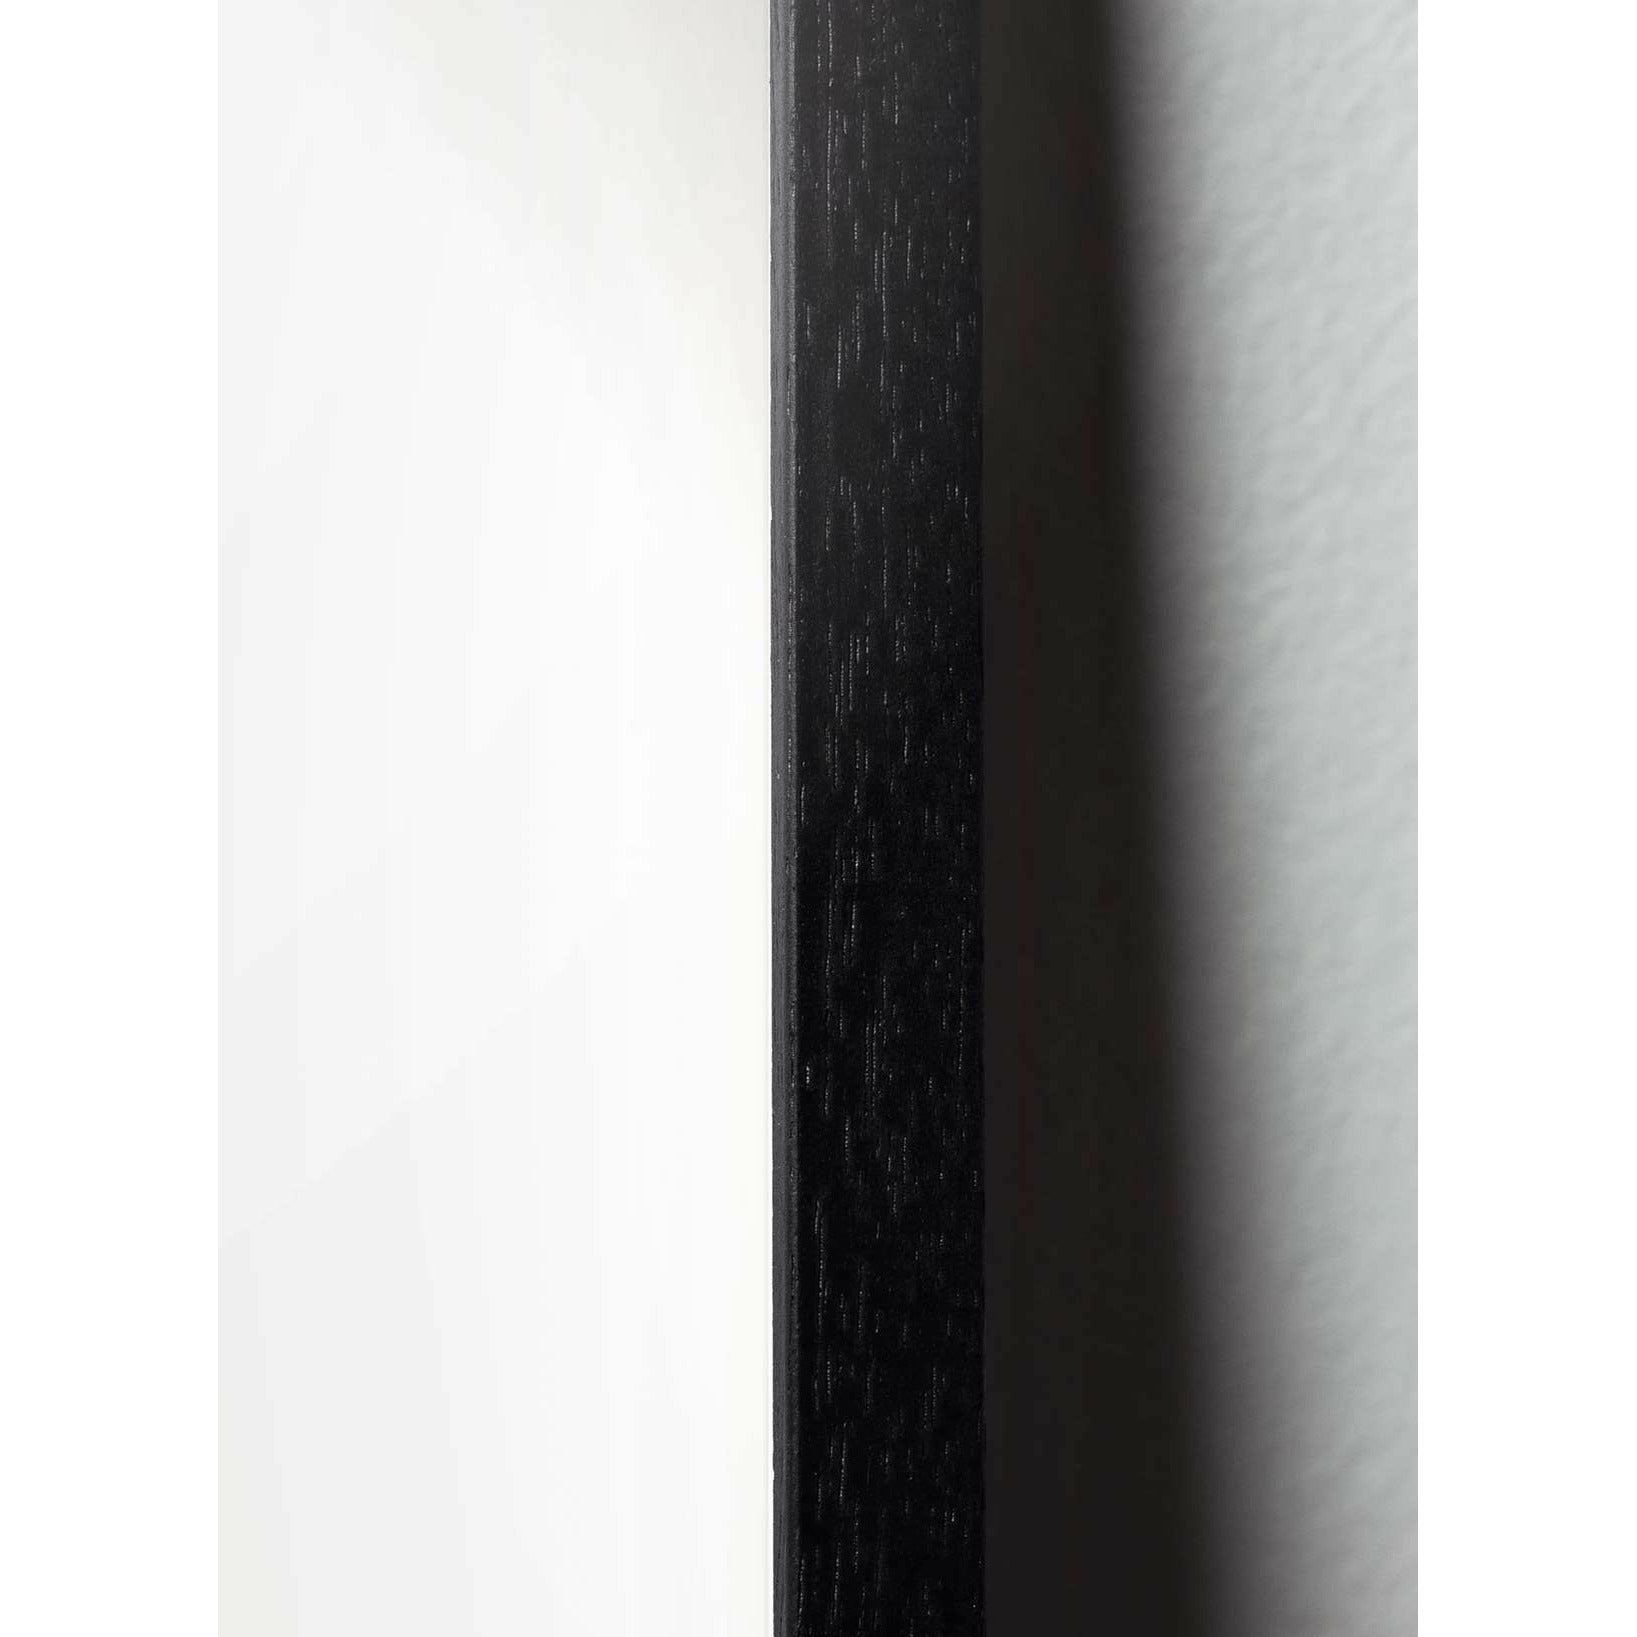 Brainchild Drop Design -kuvakejuliste, mustasta lakatusta puusta valmistettu runko 50 x70 cm, violetti